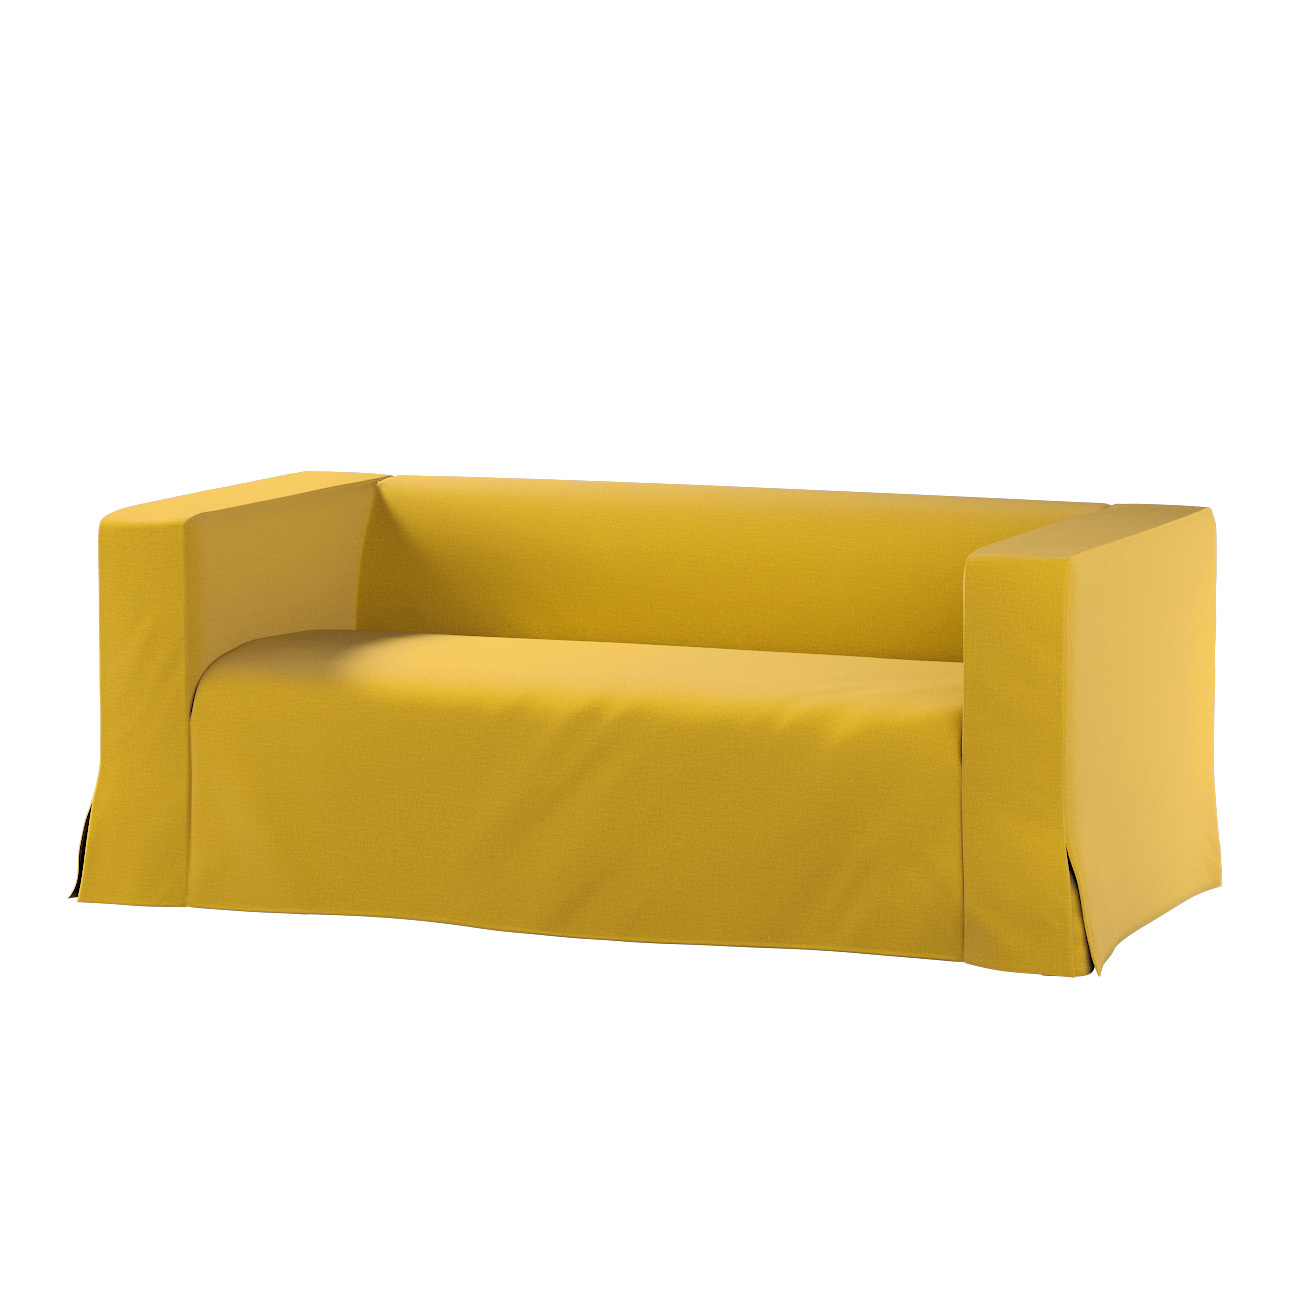 Bezug für Klippan 2-Sitzer Sofa, lang mit Kellerfalte, honiggelb, Klippan 2 günstig online kaufen